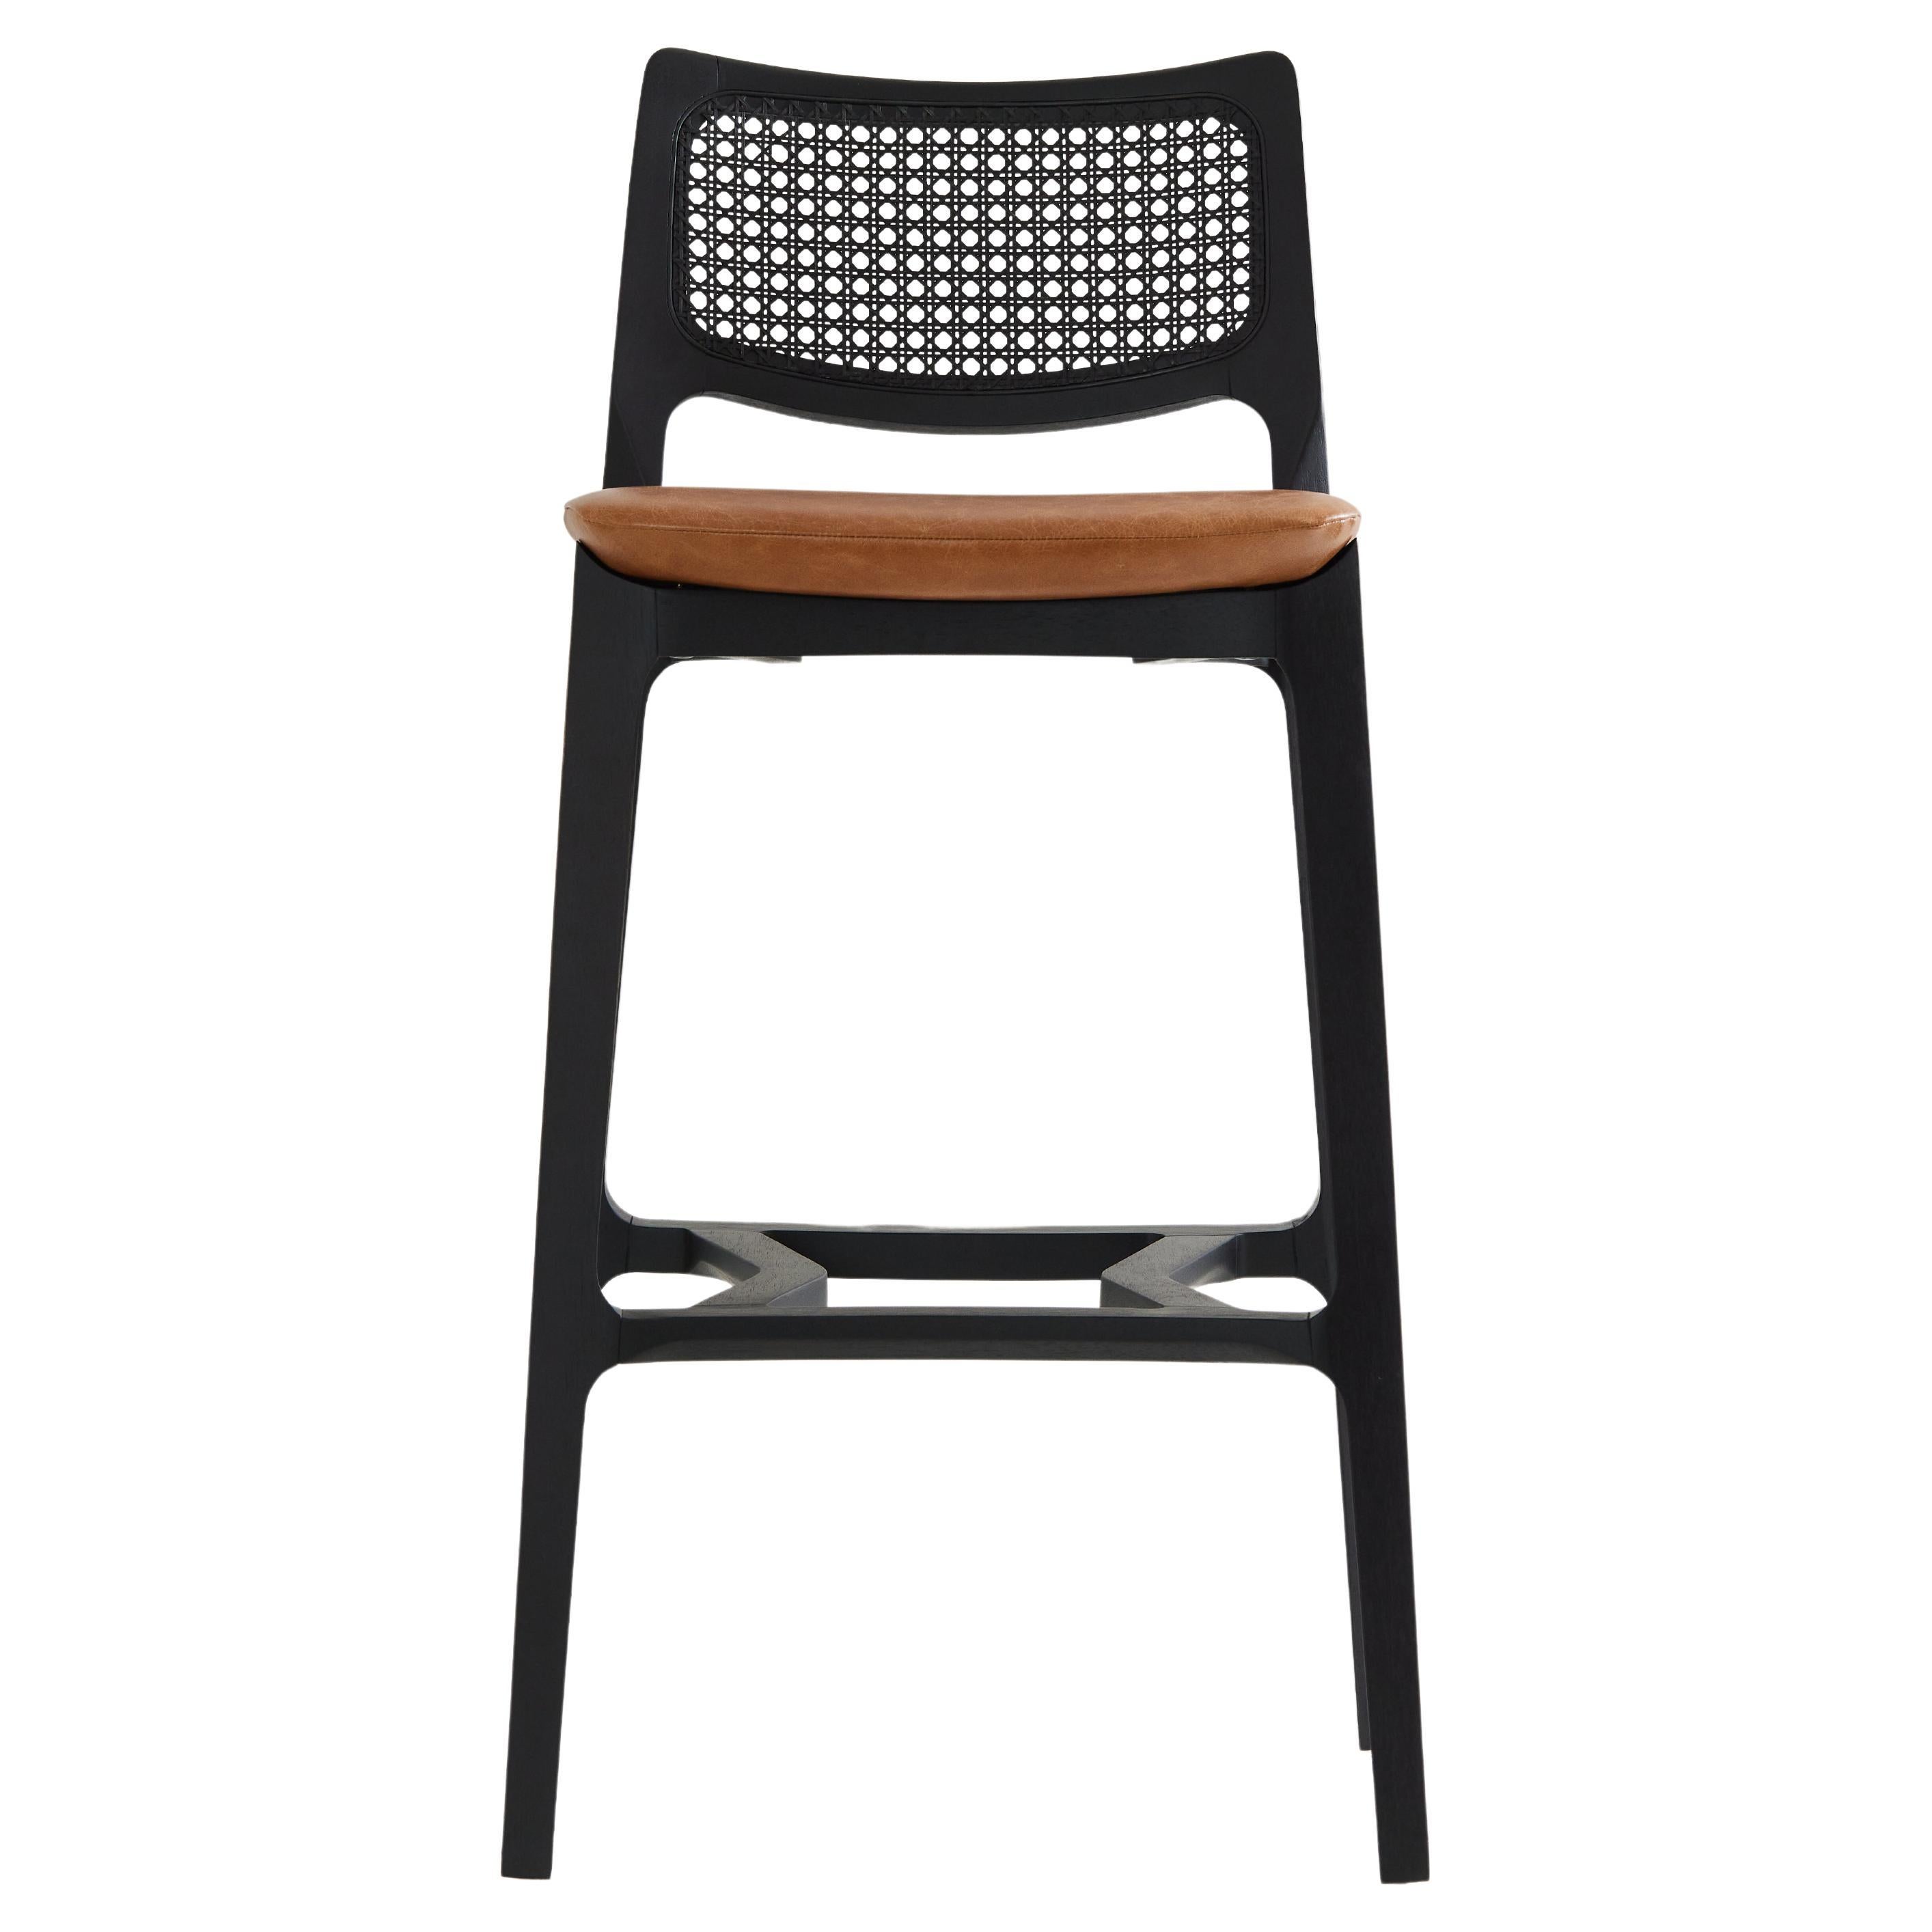 Hocker im postmodernen Stil, schwarzes Massivholz, Rückenlehne aus Rohr, Sitzfläche aus camelfarbenem Leder